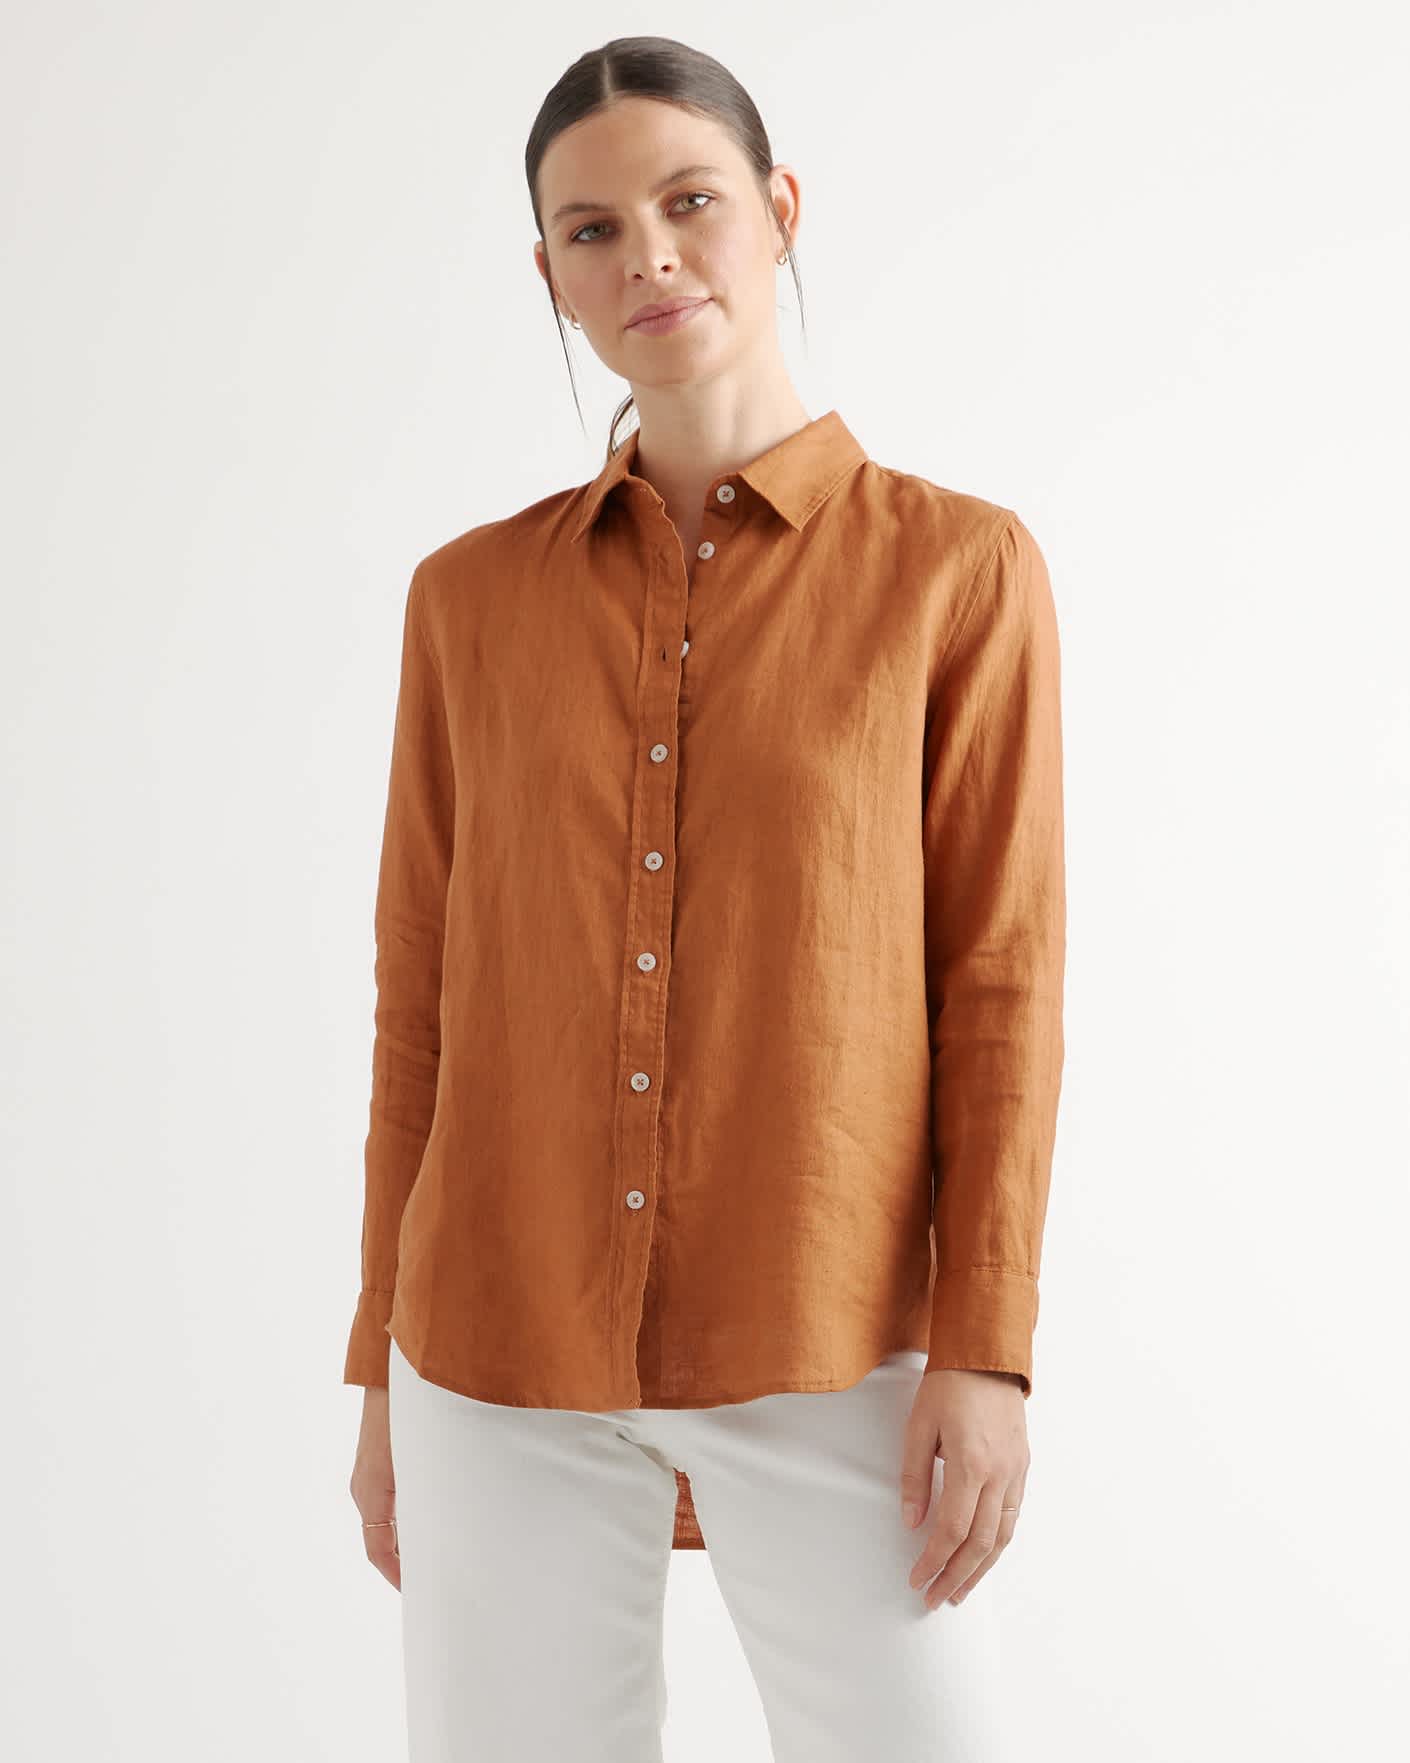 100% European Linen Long Sleeve Shirt - Terracotta - 5